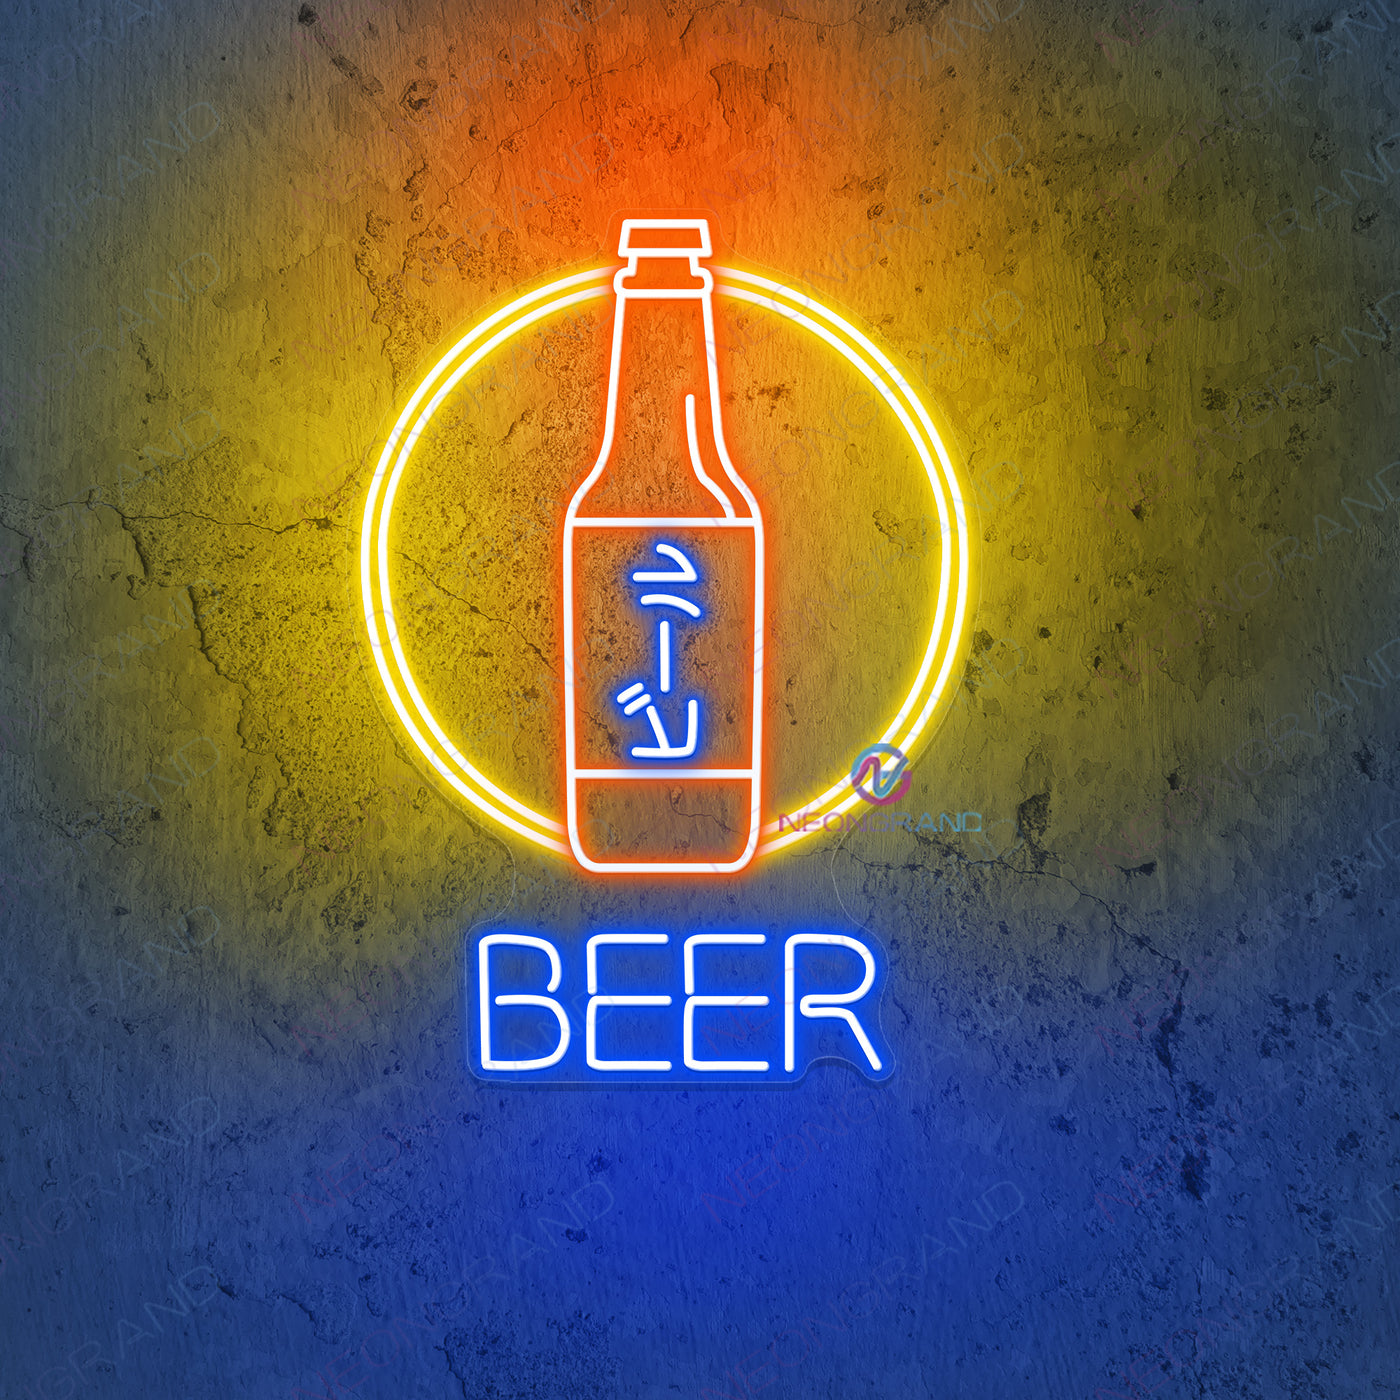 Japanese Beer Neon Sign Led Light